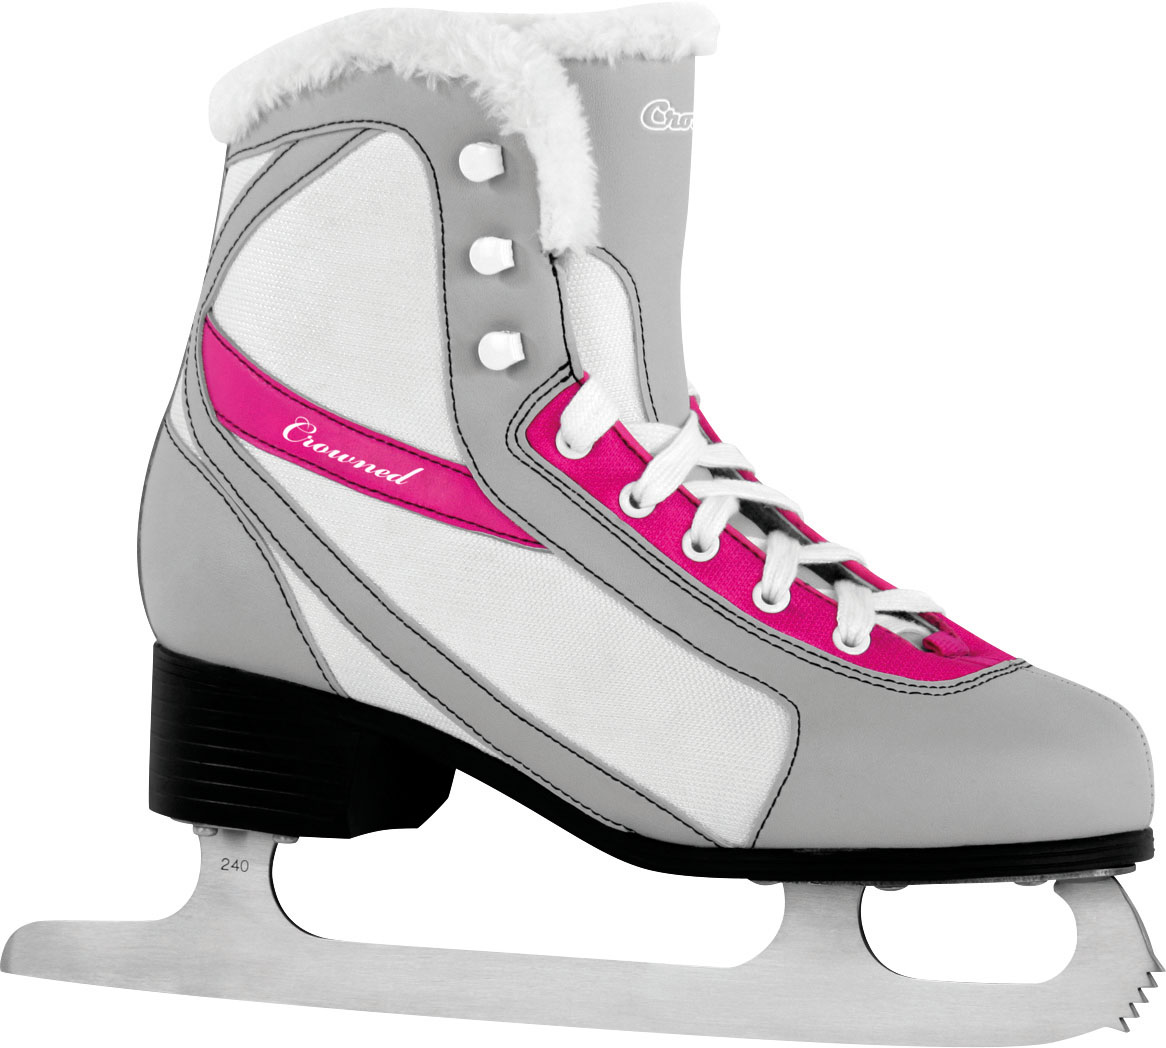 FASHION W - Women’s ice skates